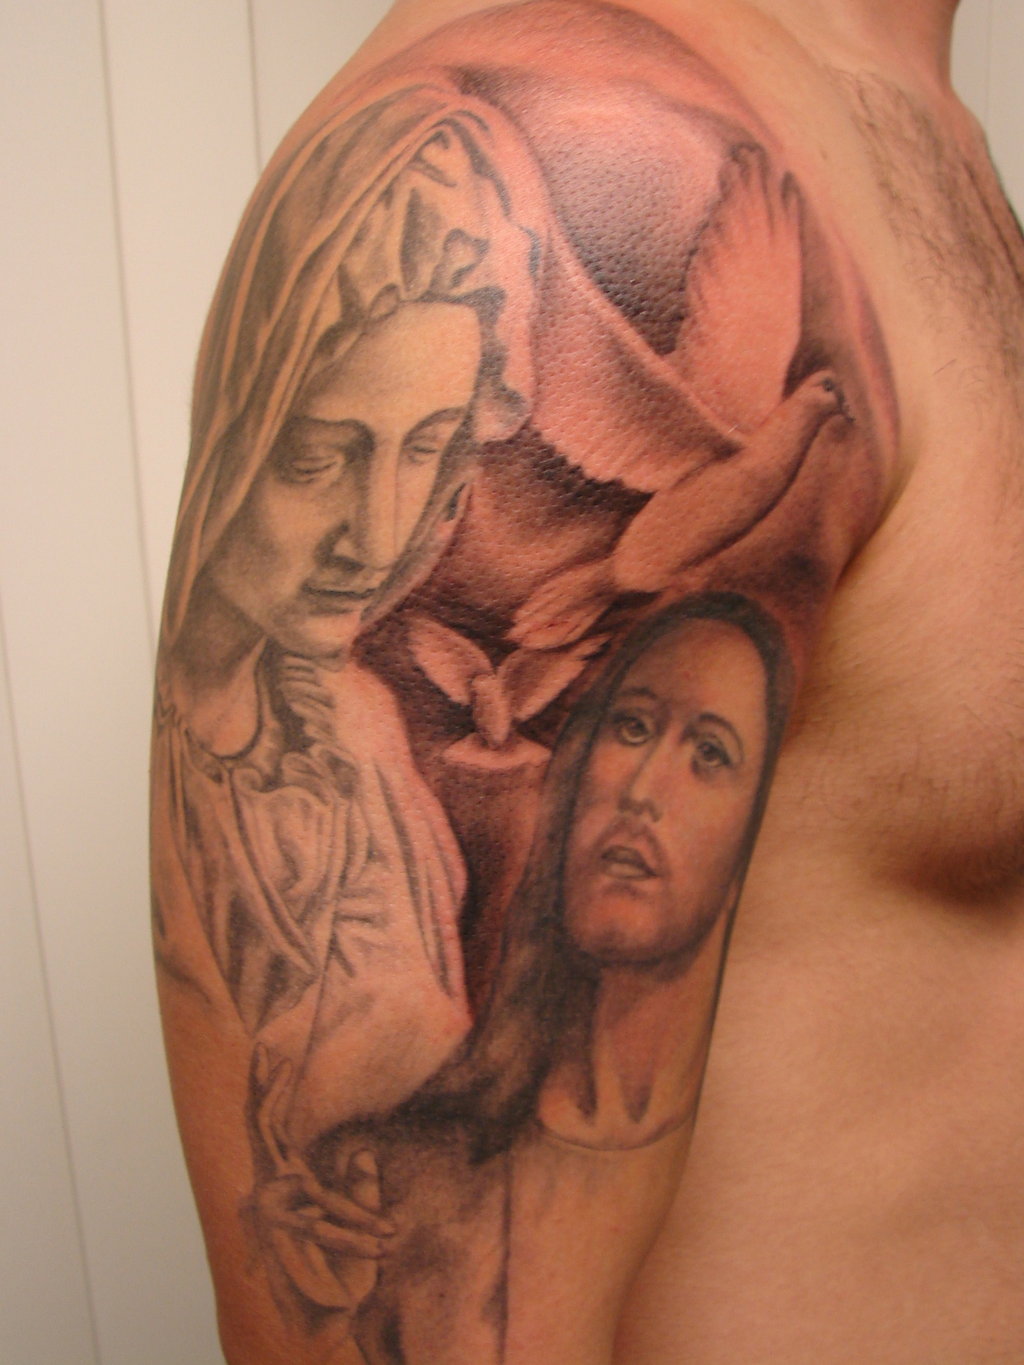 25 Stunning Virgin Mary Shoulder Tattoos.